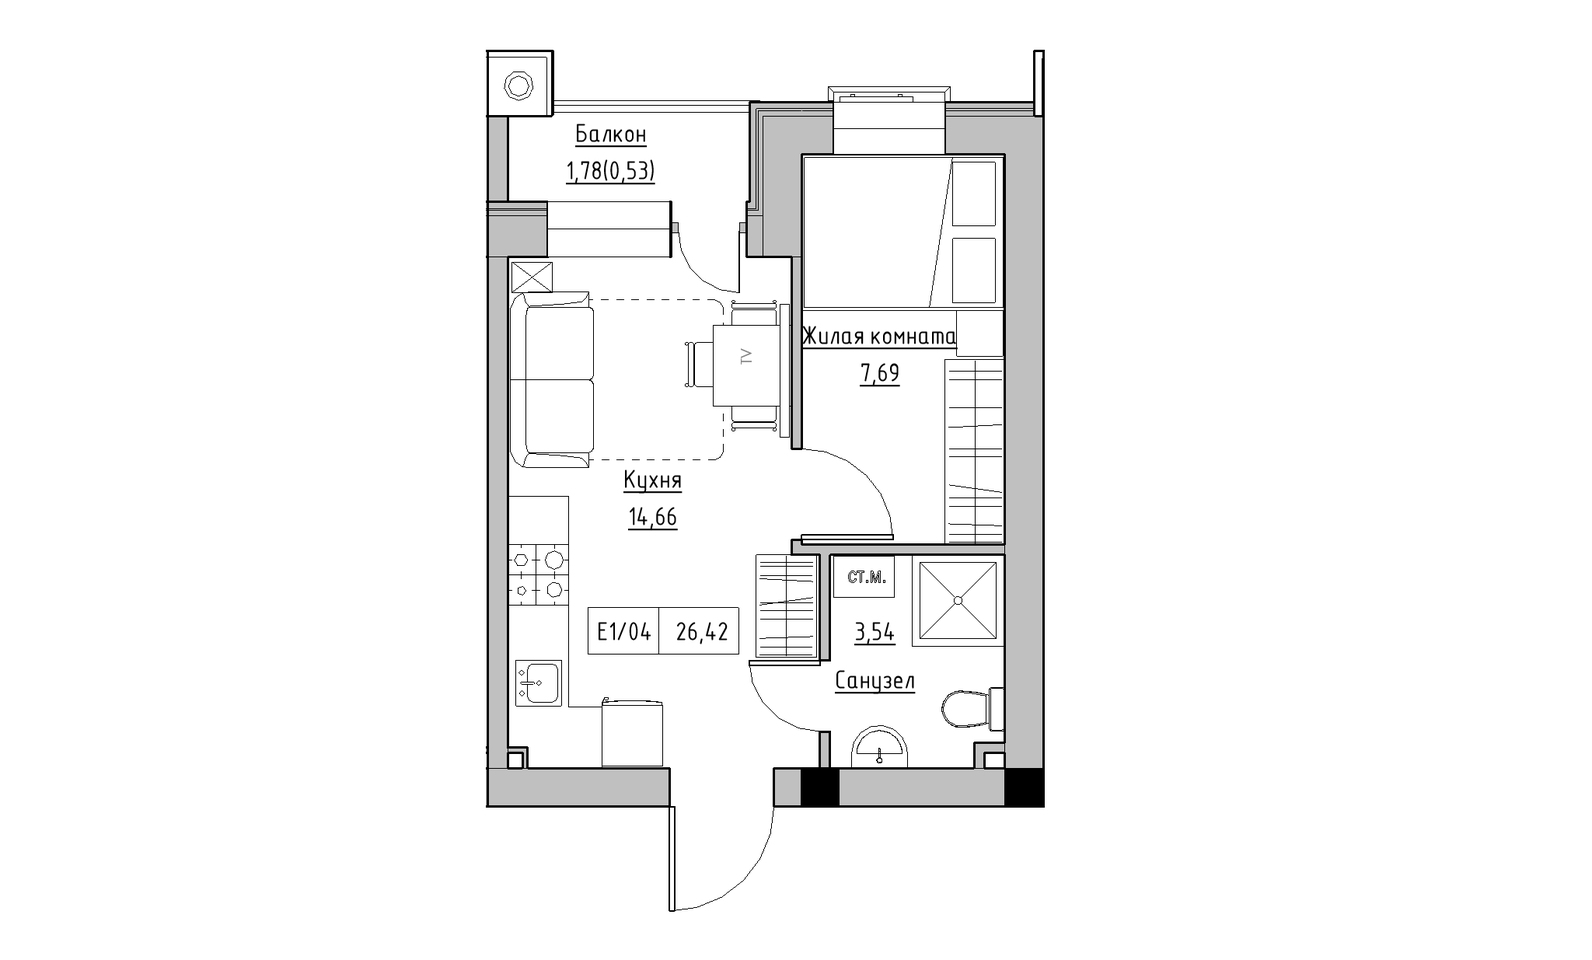 Планировка 1-к квартира площей 26.42м2, KS-014-05/0008.